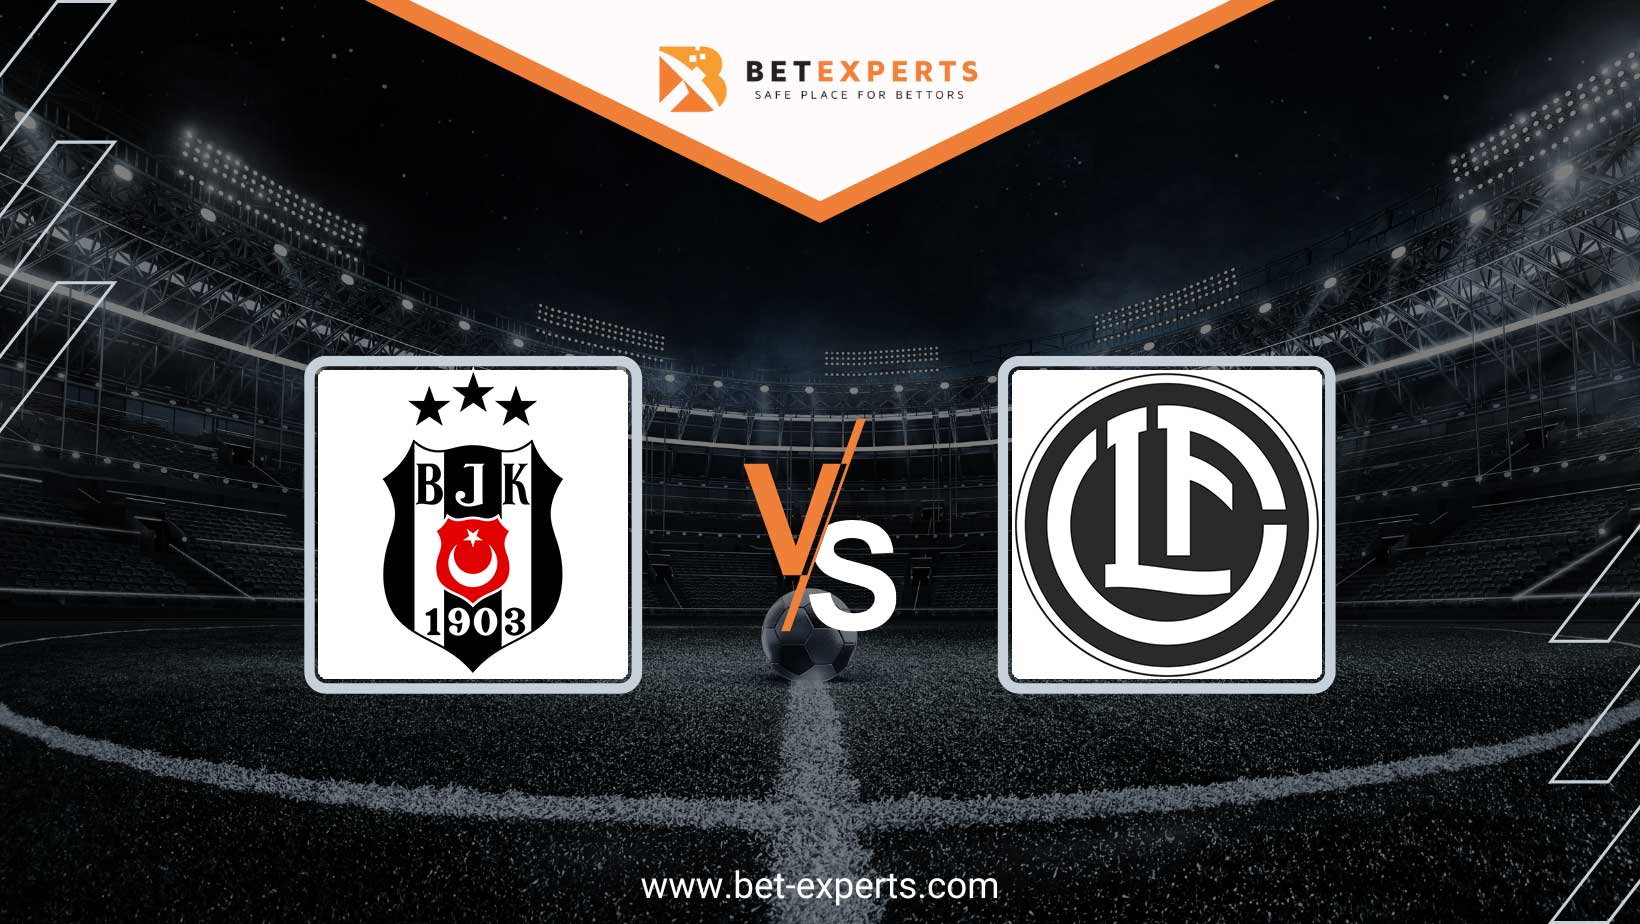 Buy FC Lugano vs Besiktas JK Tickets - 14 Dec 2023